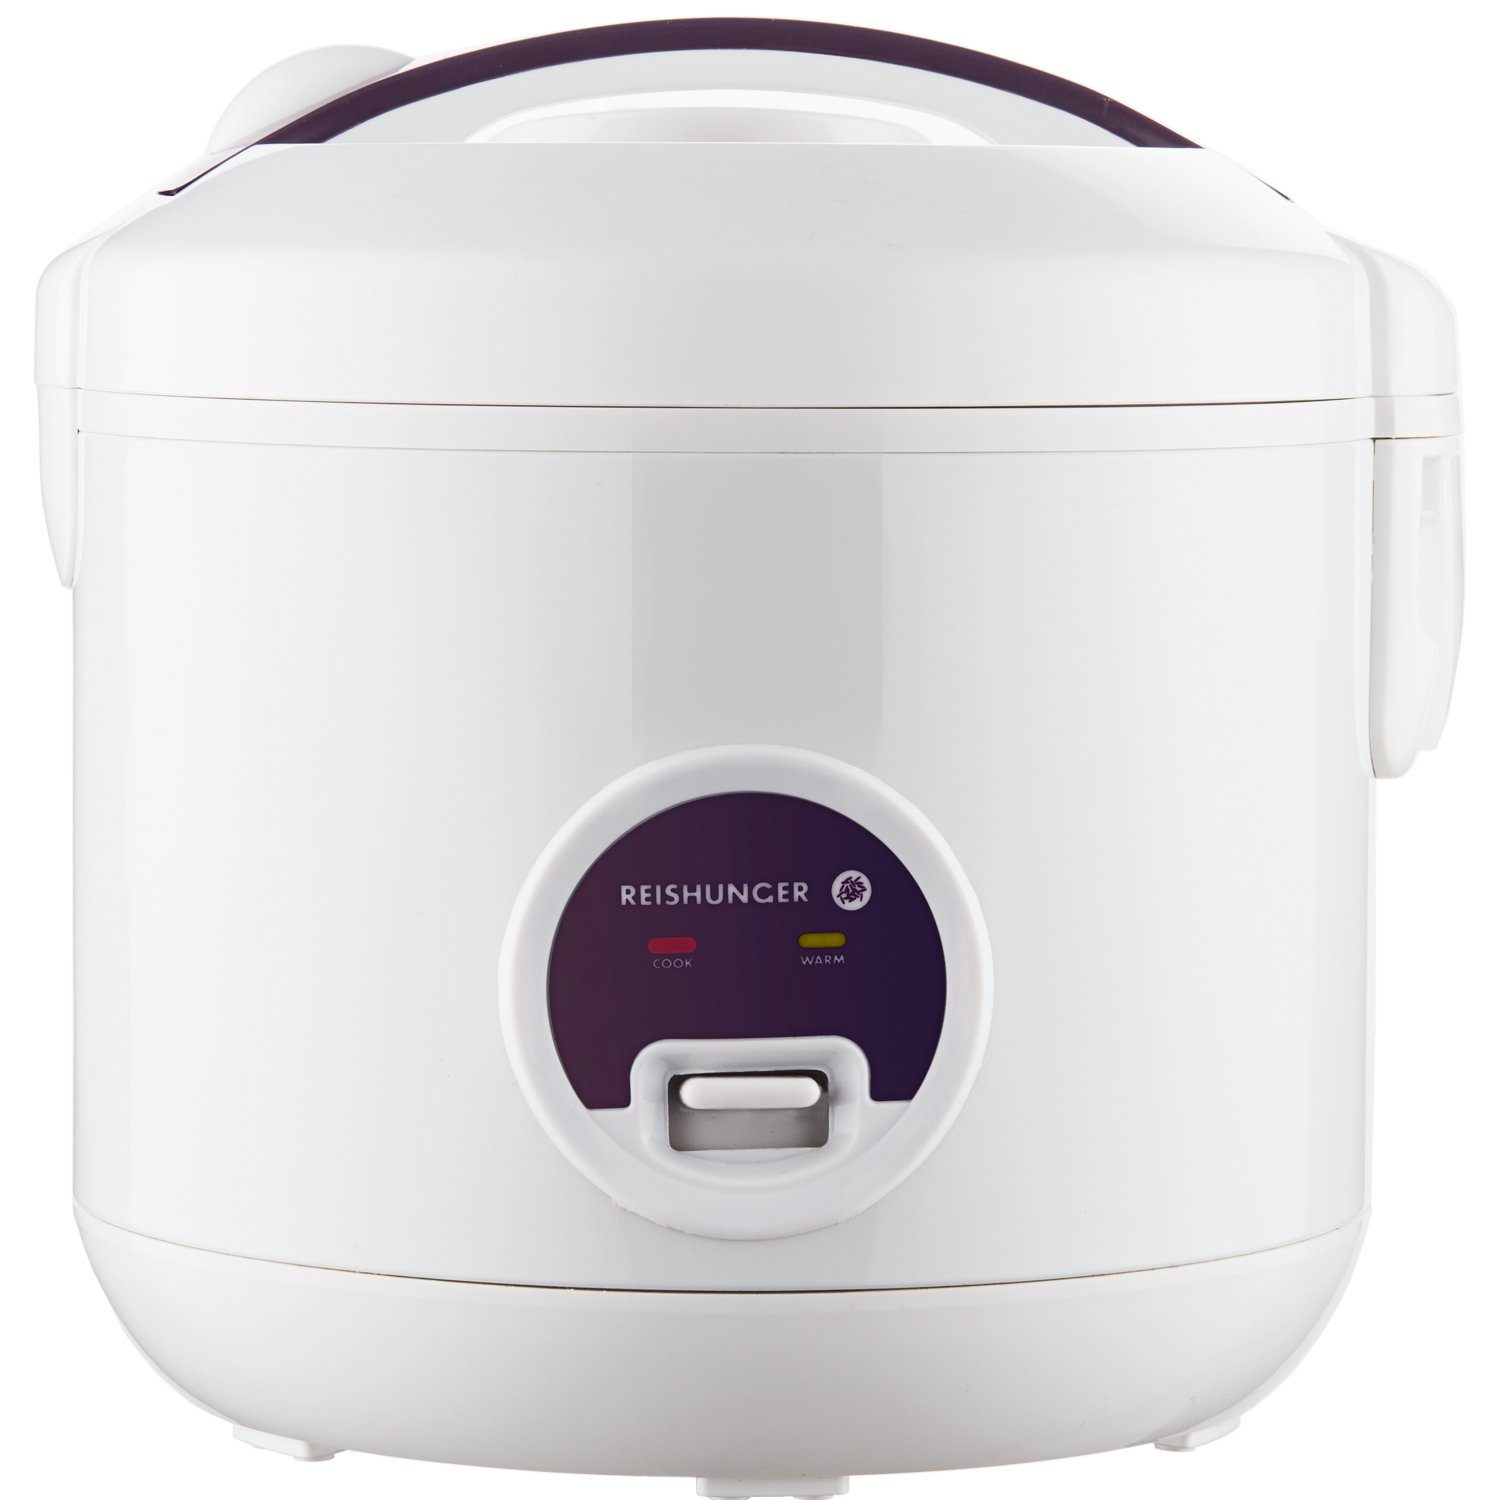 Reishunger Reiskocher – Reiskocher, 500 W, Mit Dampfgarfunktion & Warmhaltefunktion